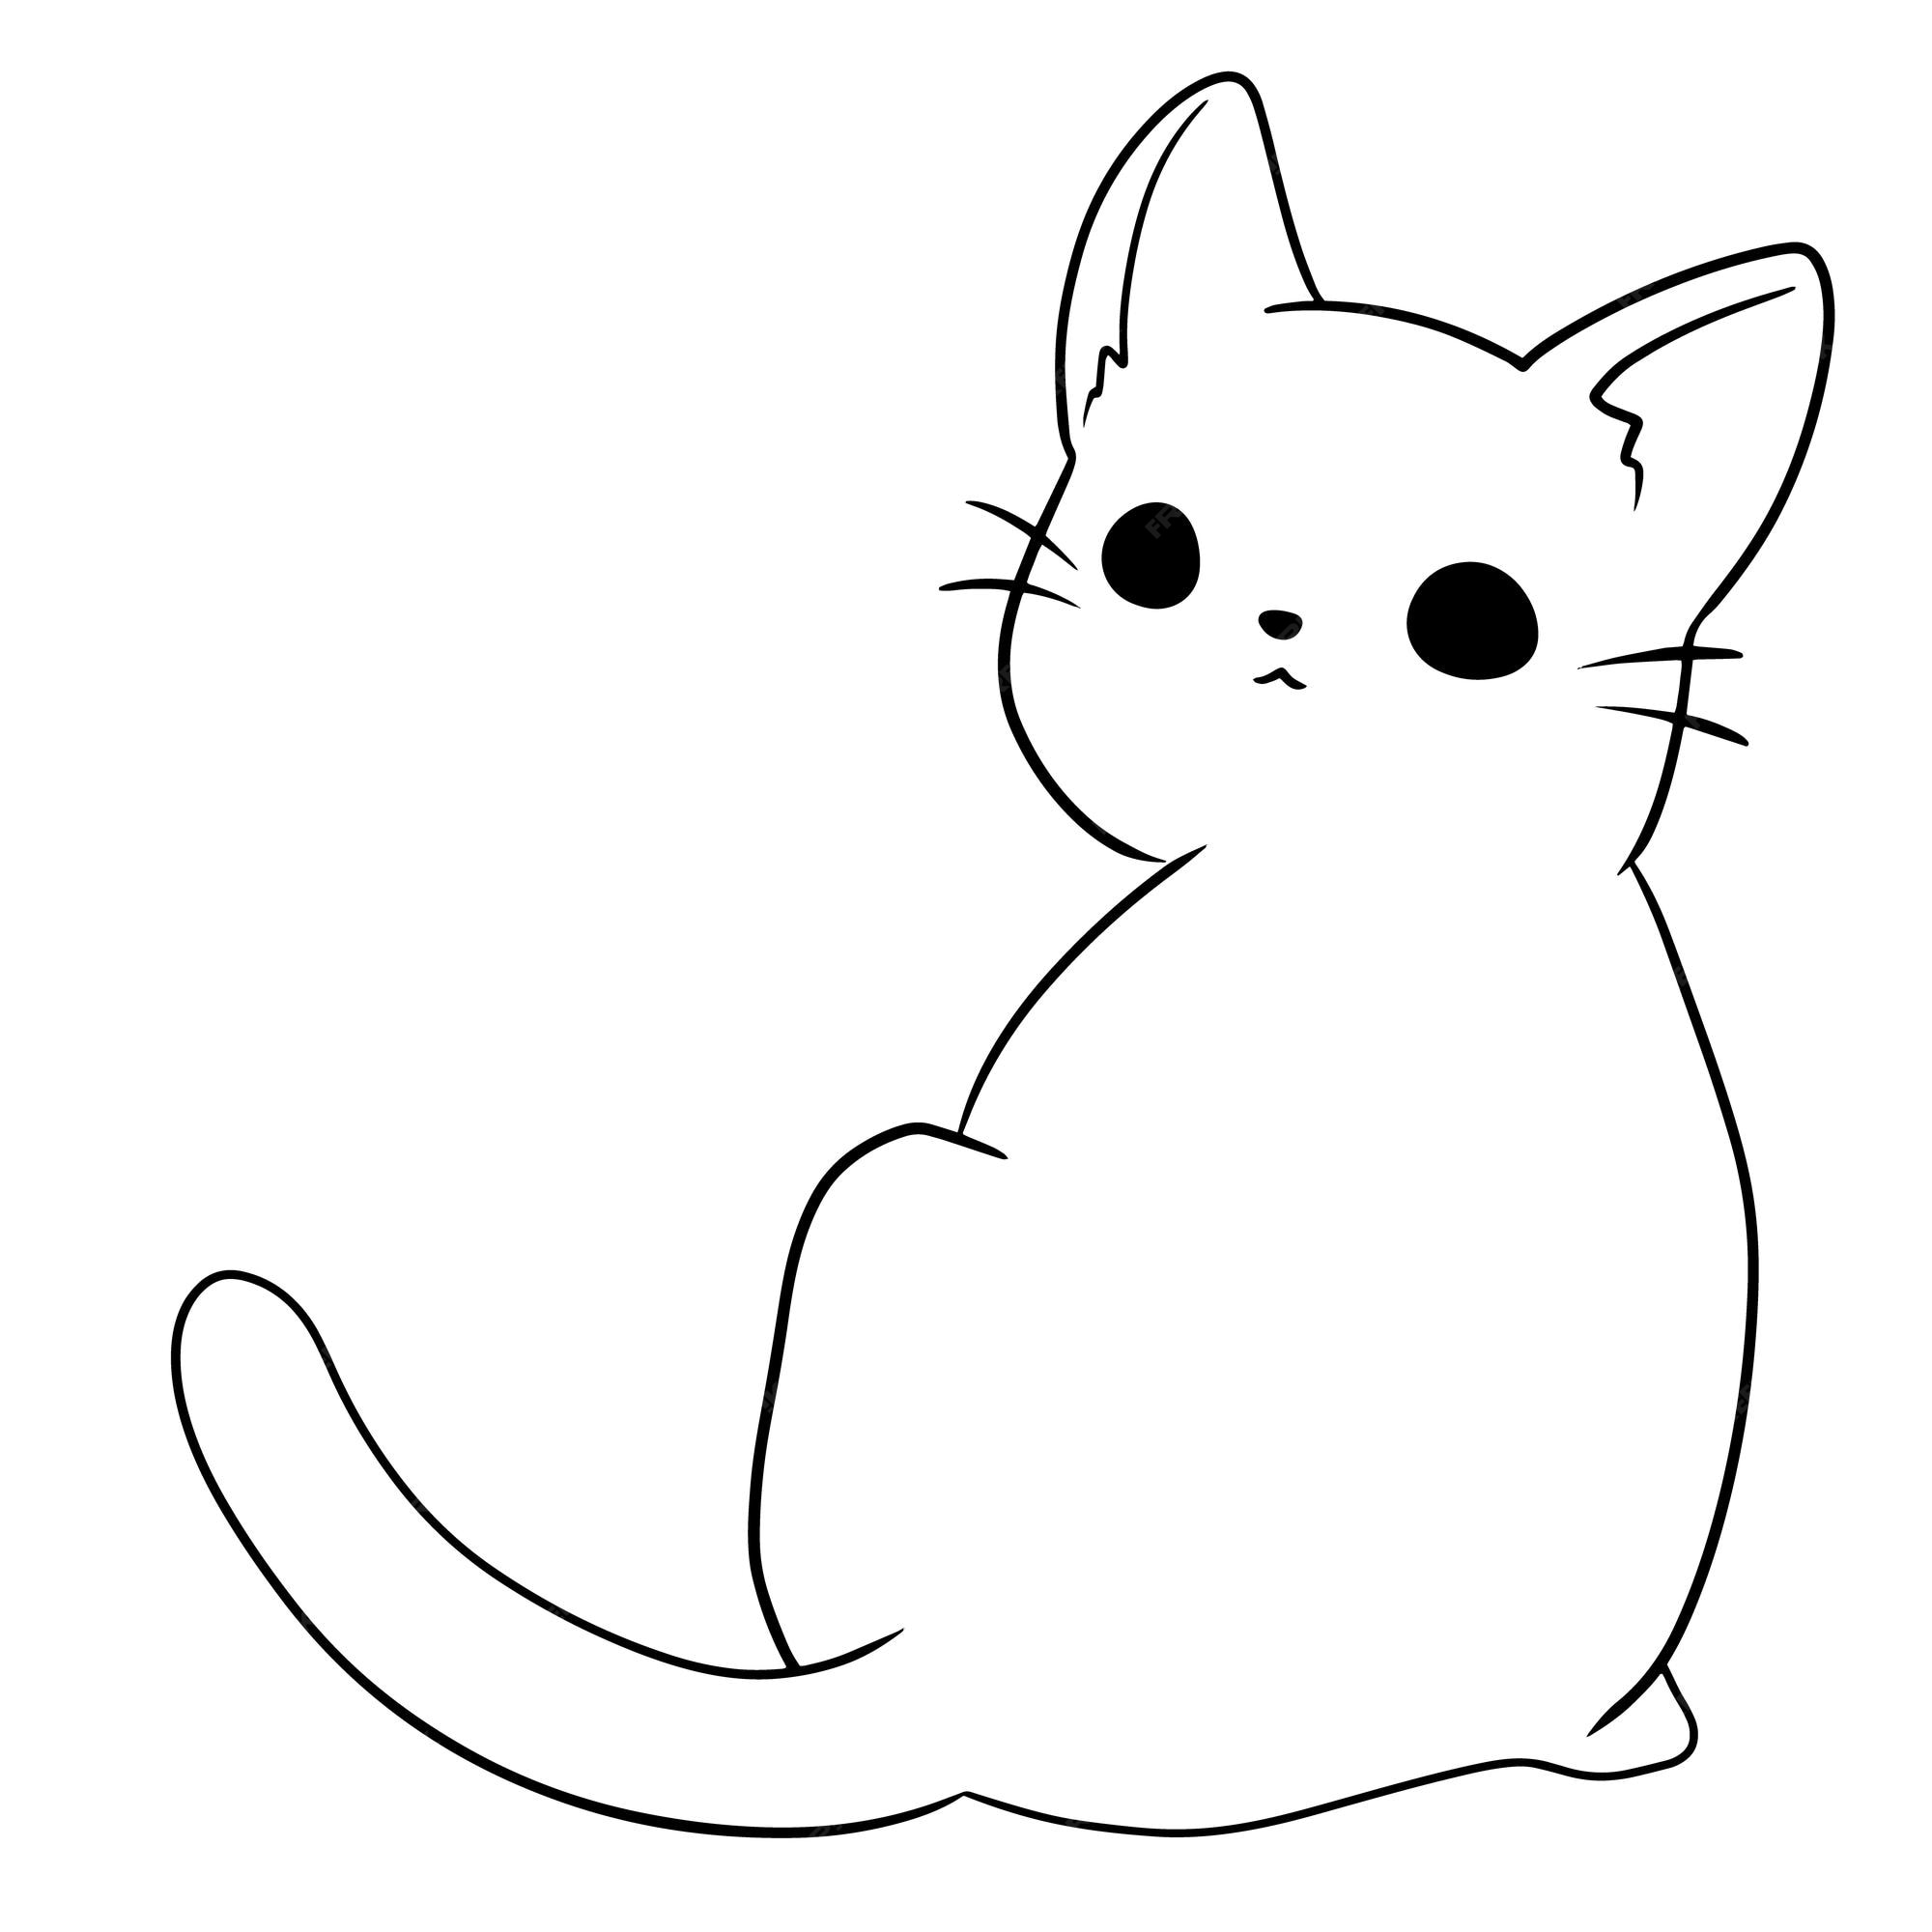 Desenho animado gato animal fofo doodle kawaii anime página para